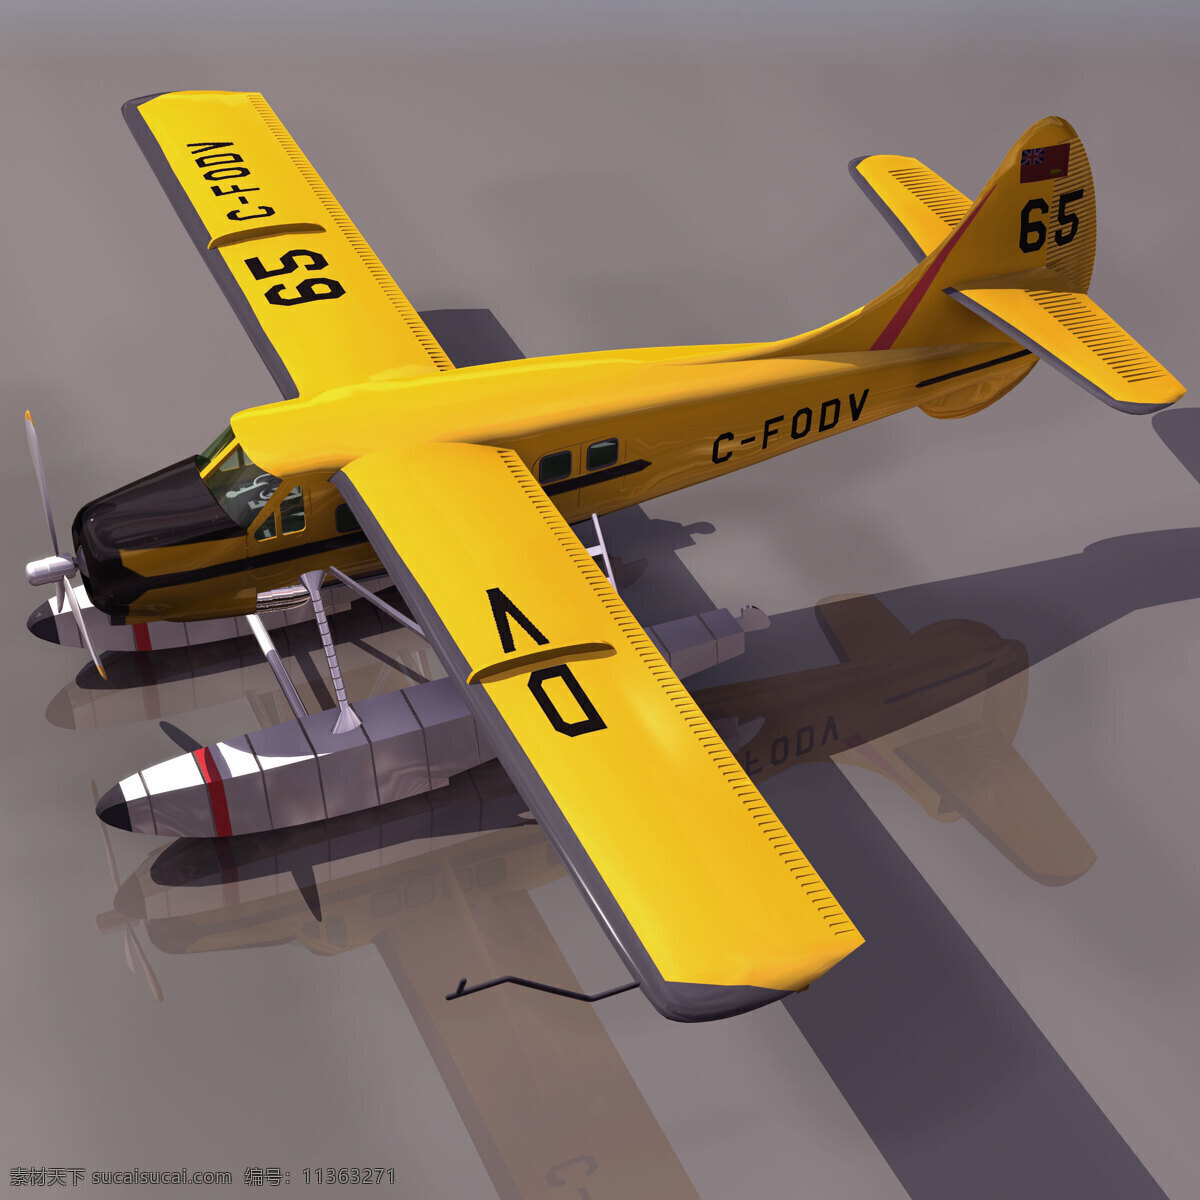 黄色 海上 3d 飞机模型 3d飞机模型 3d设计模型 max 海上飞机 模板下载 机场设备模型 3d模型素材 其他3d模型